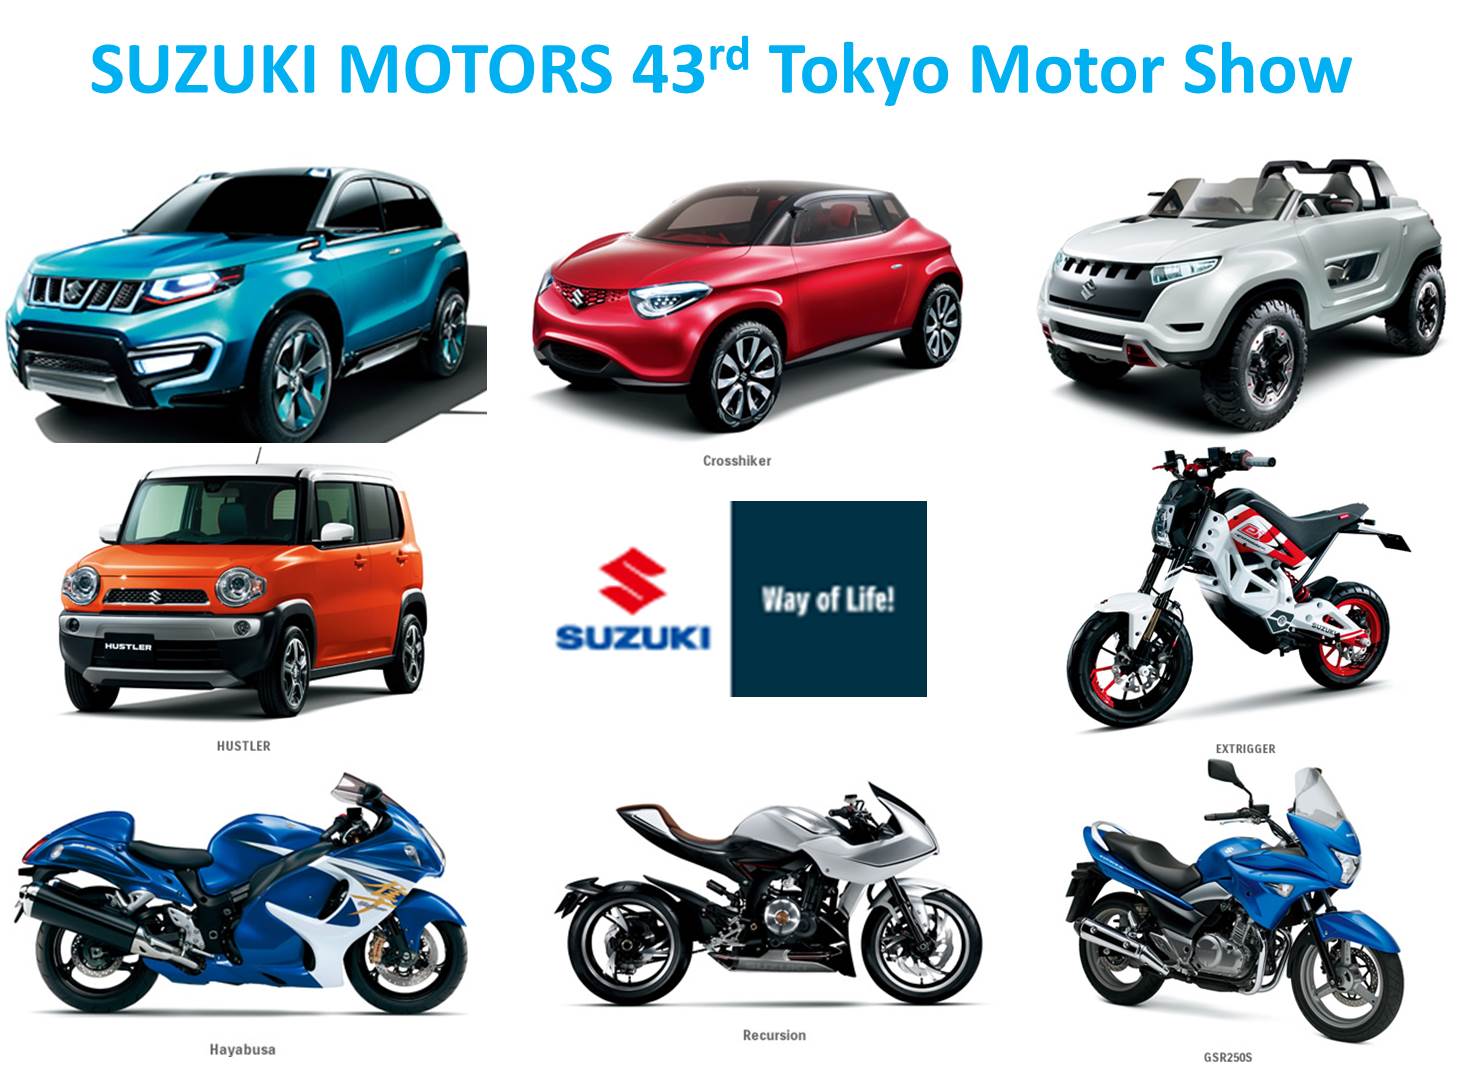 Suzuki at 43rd Tokyo Motor Show